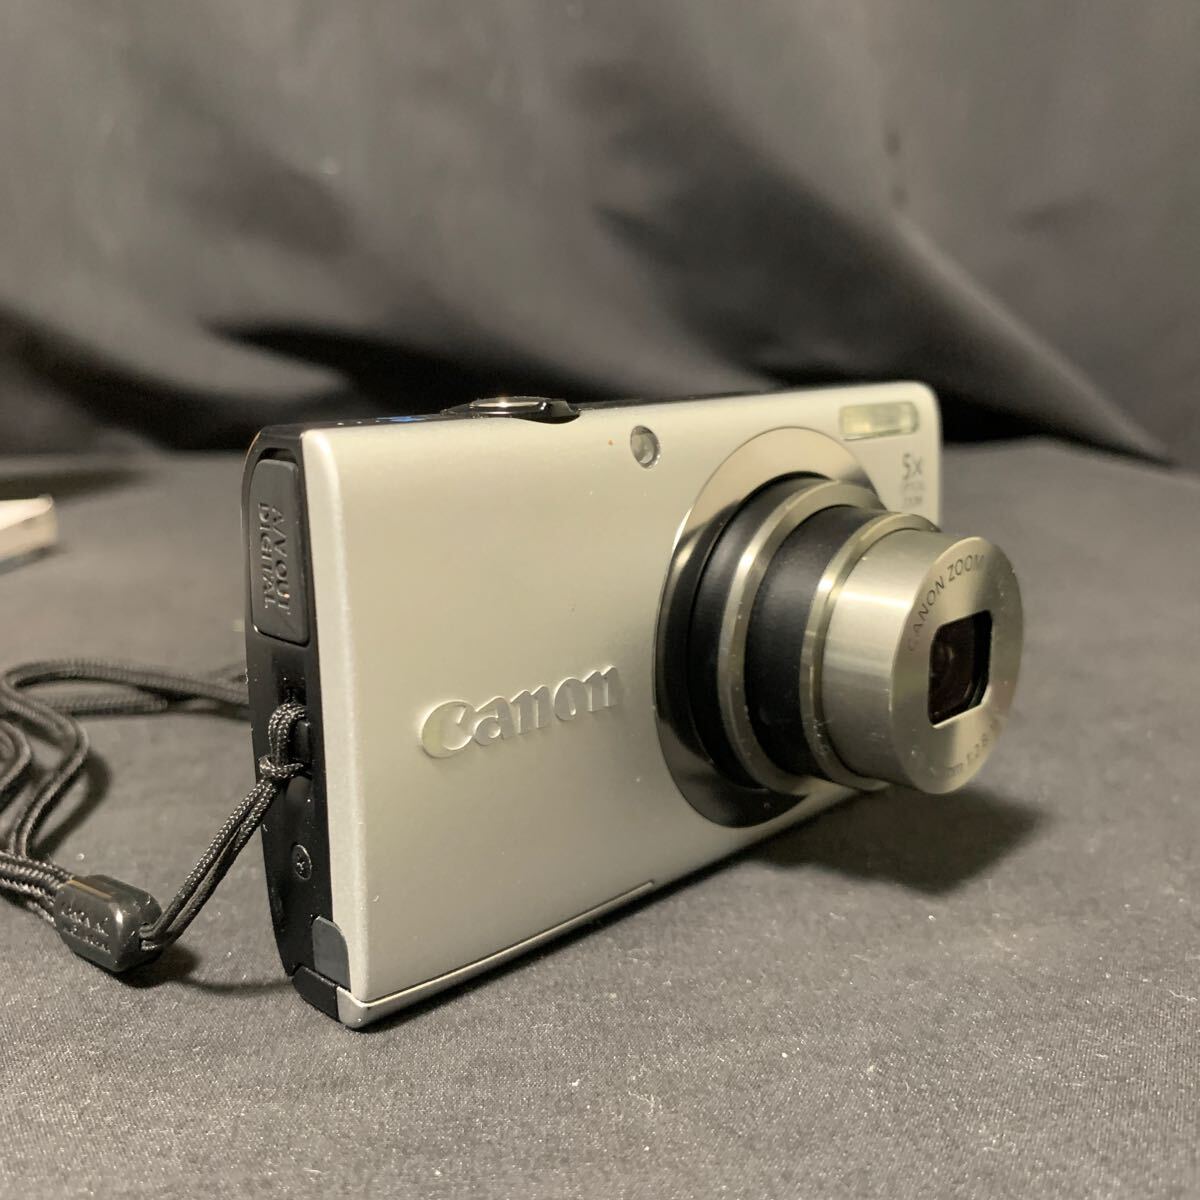 Canon PowerShot A2300 シルバー PC1732 コンパクトデジタルカメラ バッテリー1個 元箱 説明書 付き 動作確認済み キャノン デジカメ _画像3